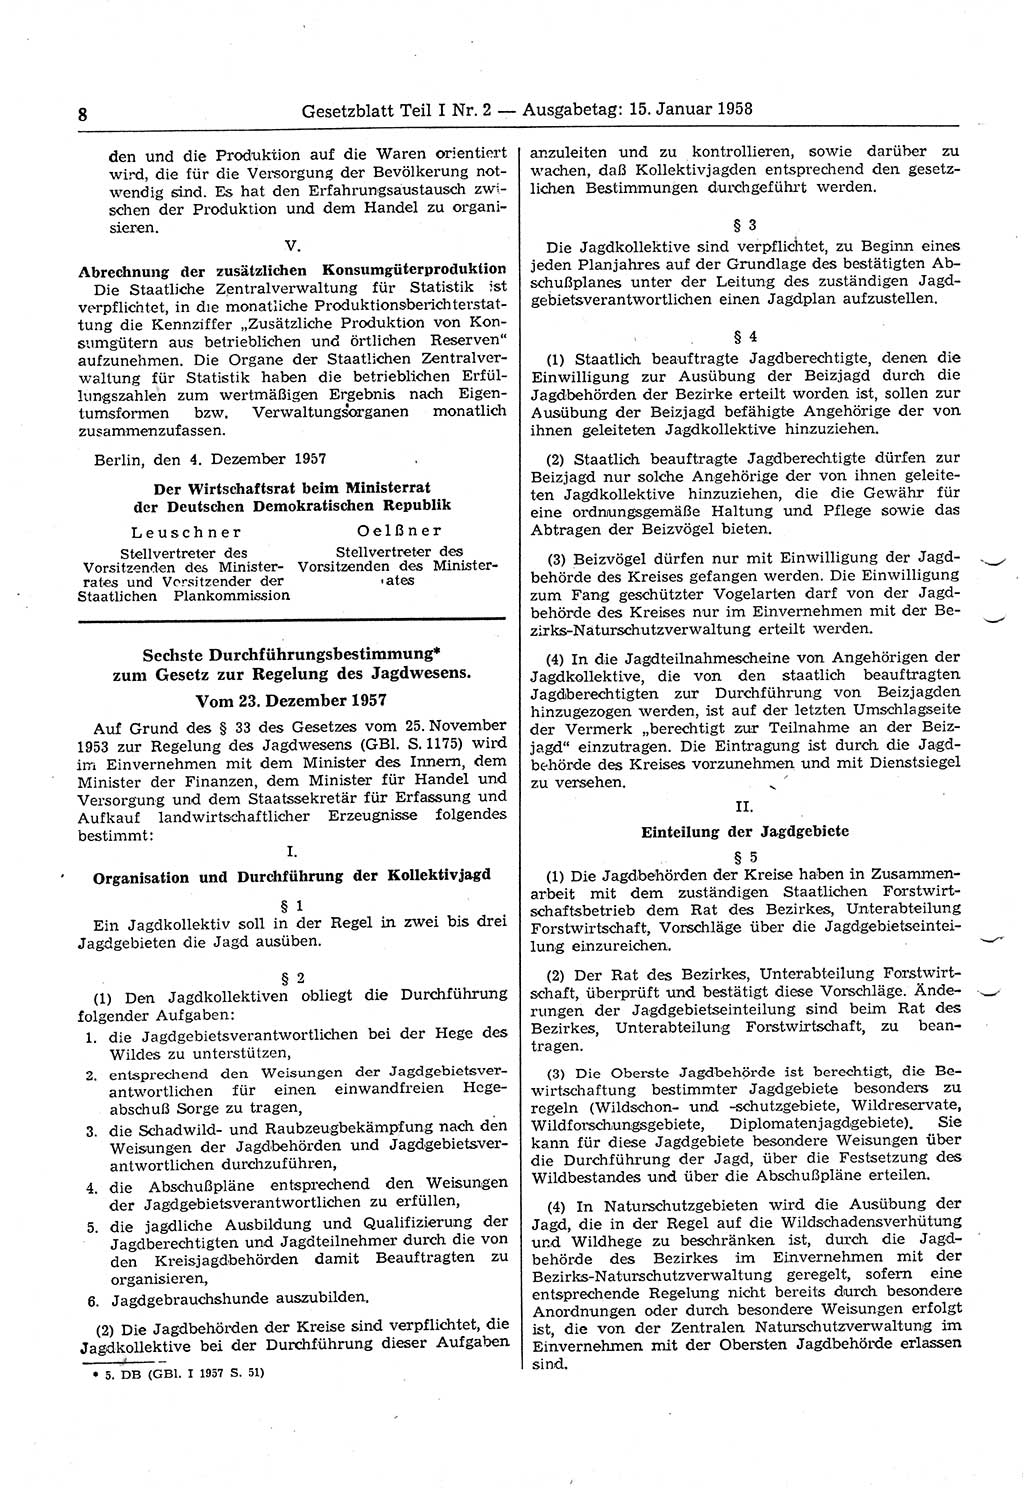 Gesetzblatt (GBl.) der Deutschen Demokratischen Republik (DDR) Teil Ⅰ 1958, Seite 8 (GBl. DDR Ⅰ 1958, S. 8)